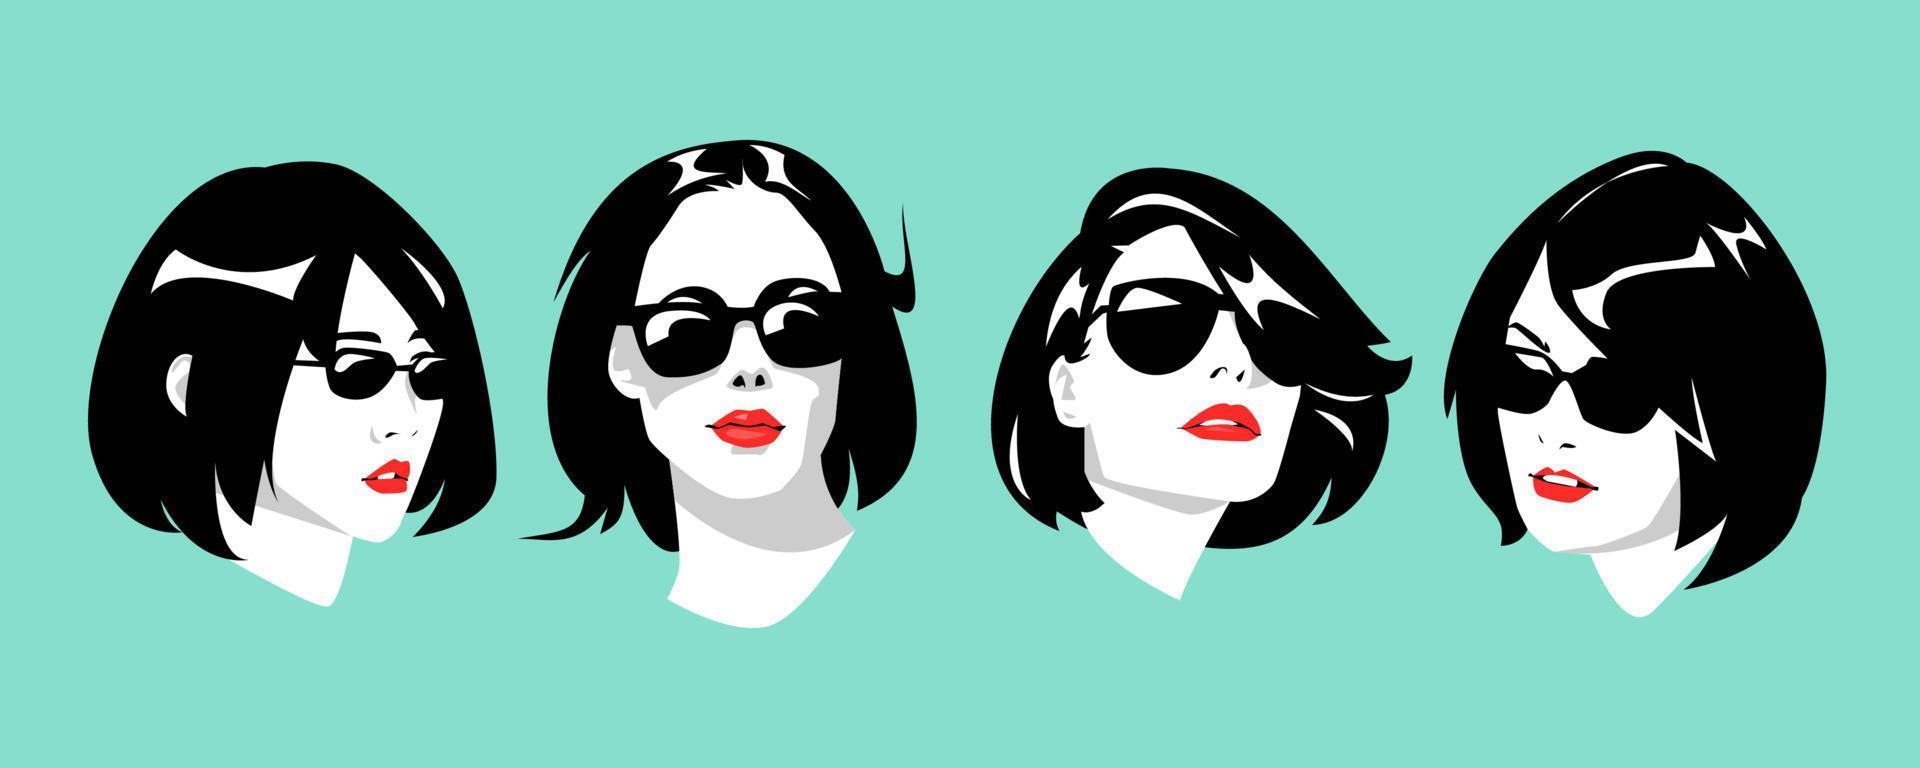 conjunto de ícones de retratos de lindas garotas de óculos e cabelo curto vetor